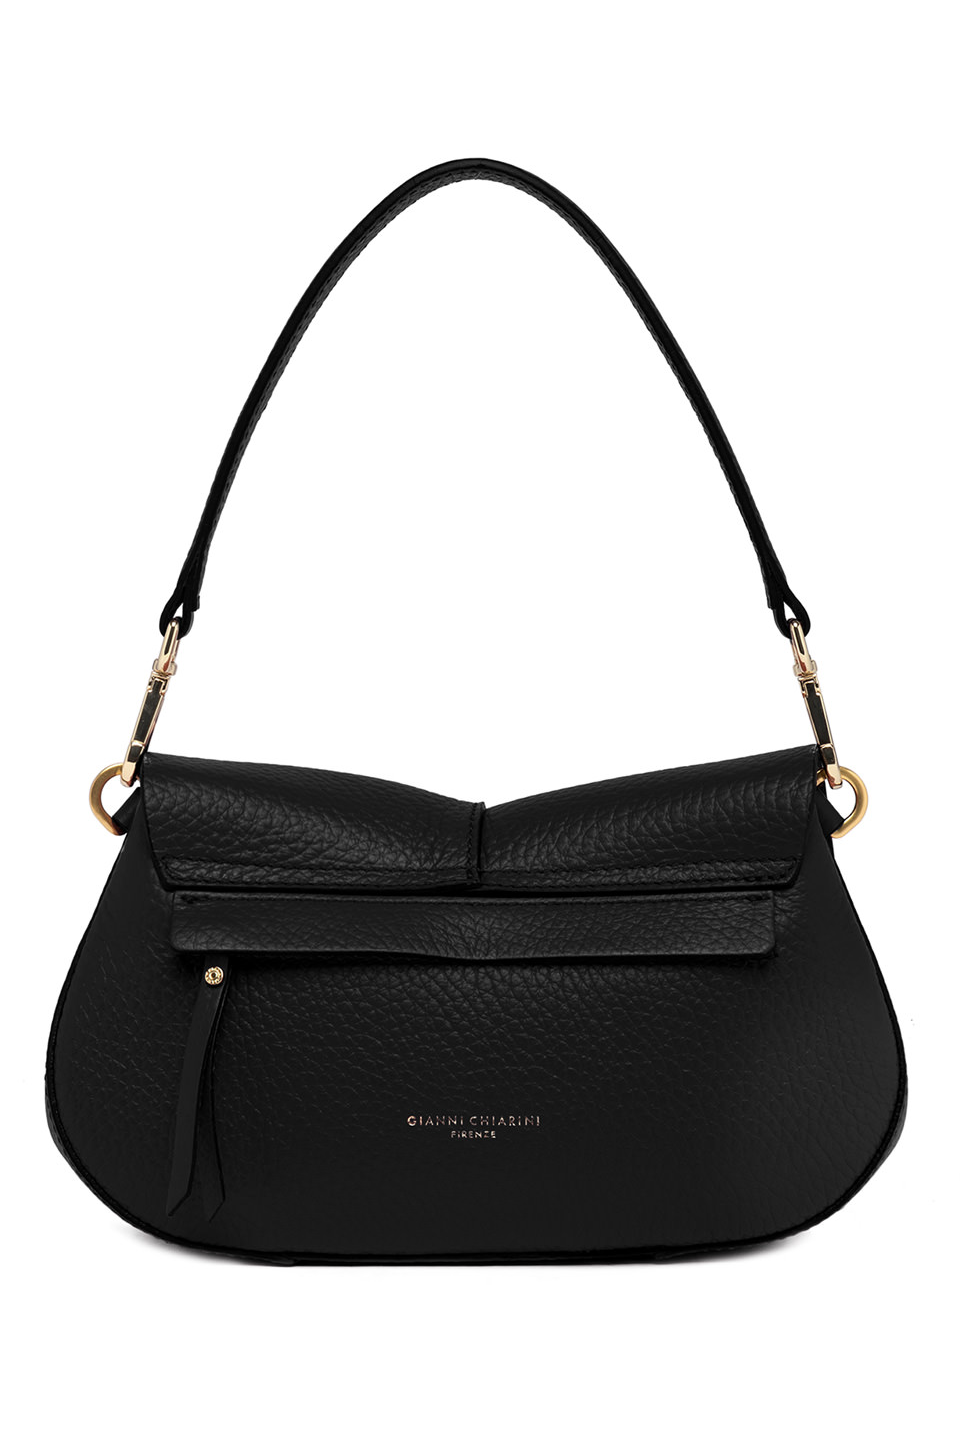 Schwarze, längliche Tasche mit Außentasche mit Reißverschluss von hinten. Die Tasche ist von Gianni Chiarini und wurde aus genarbtem Leder gefertigt.